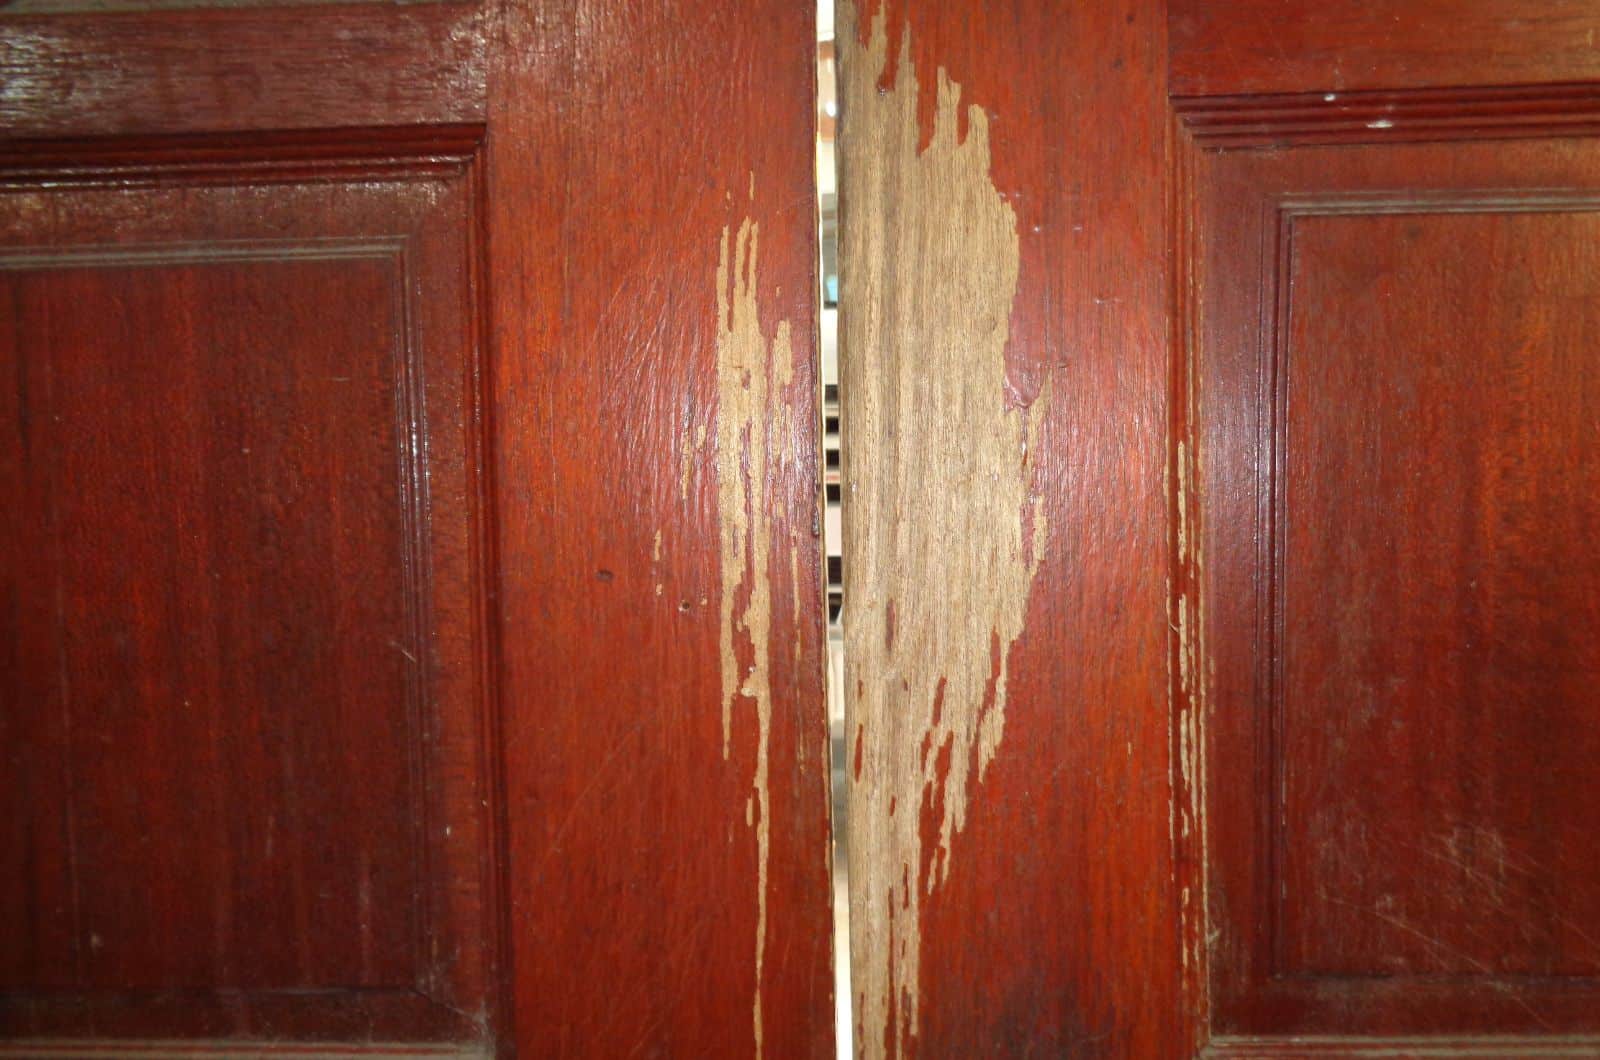 Scratched door